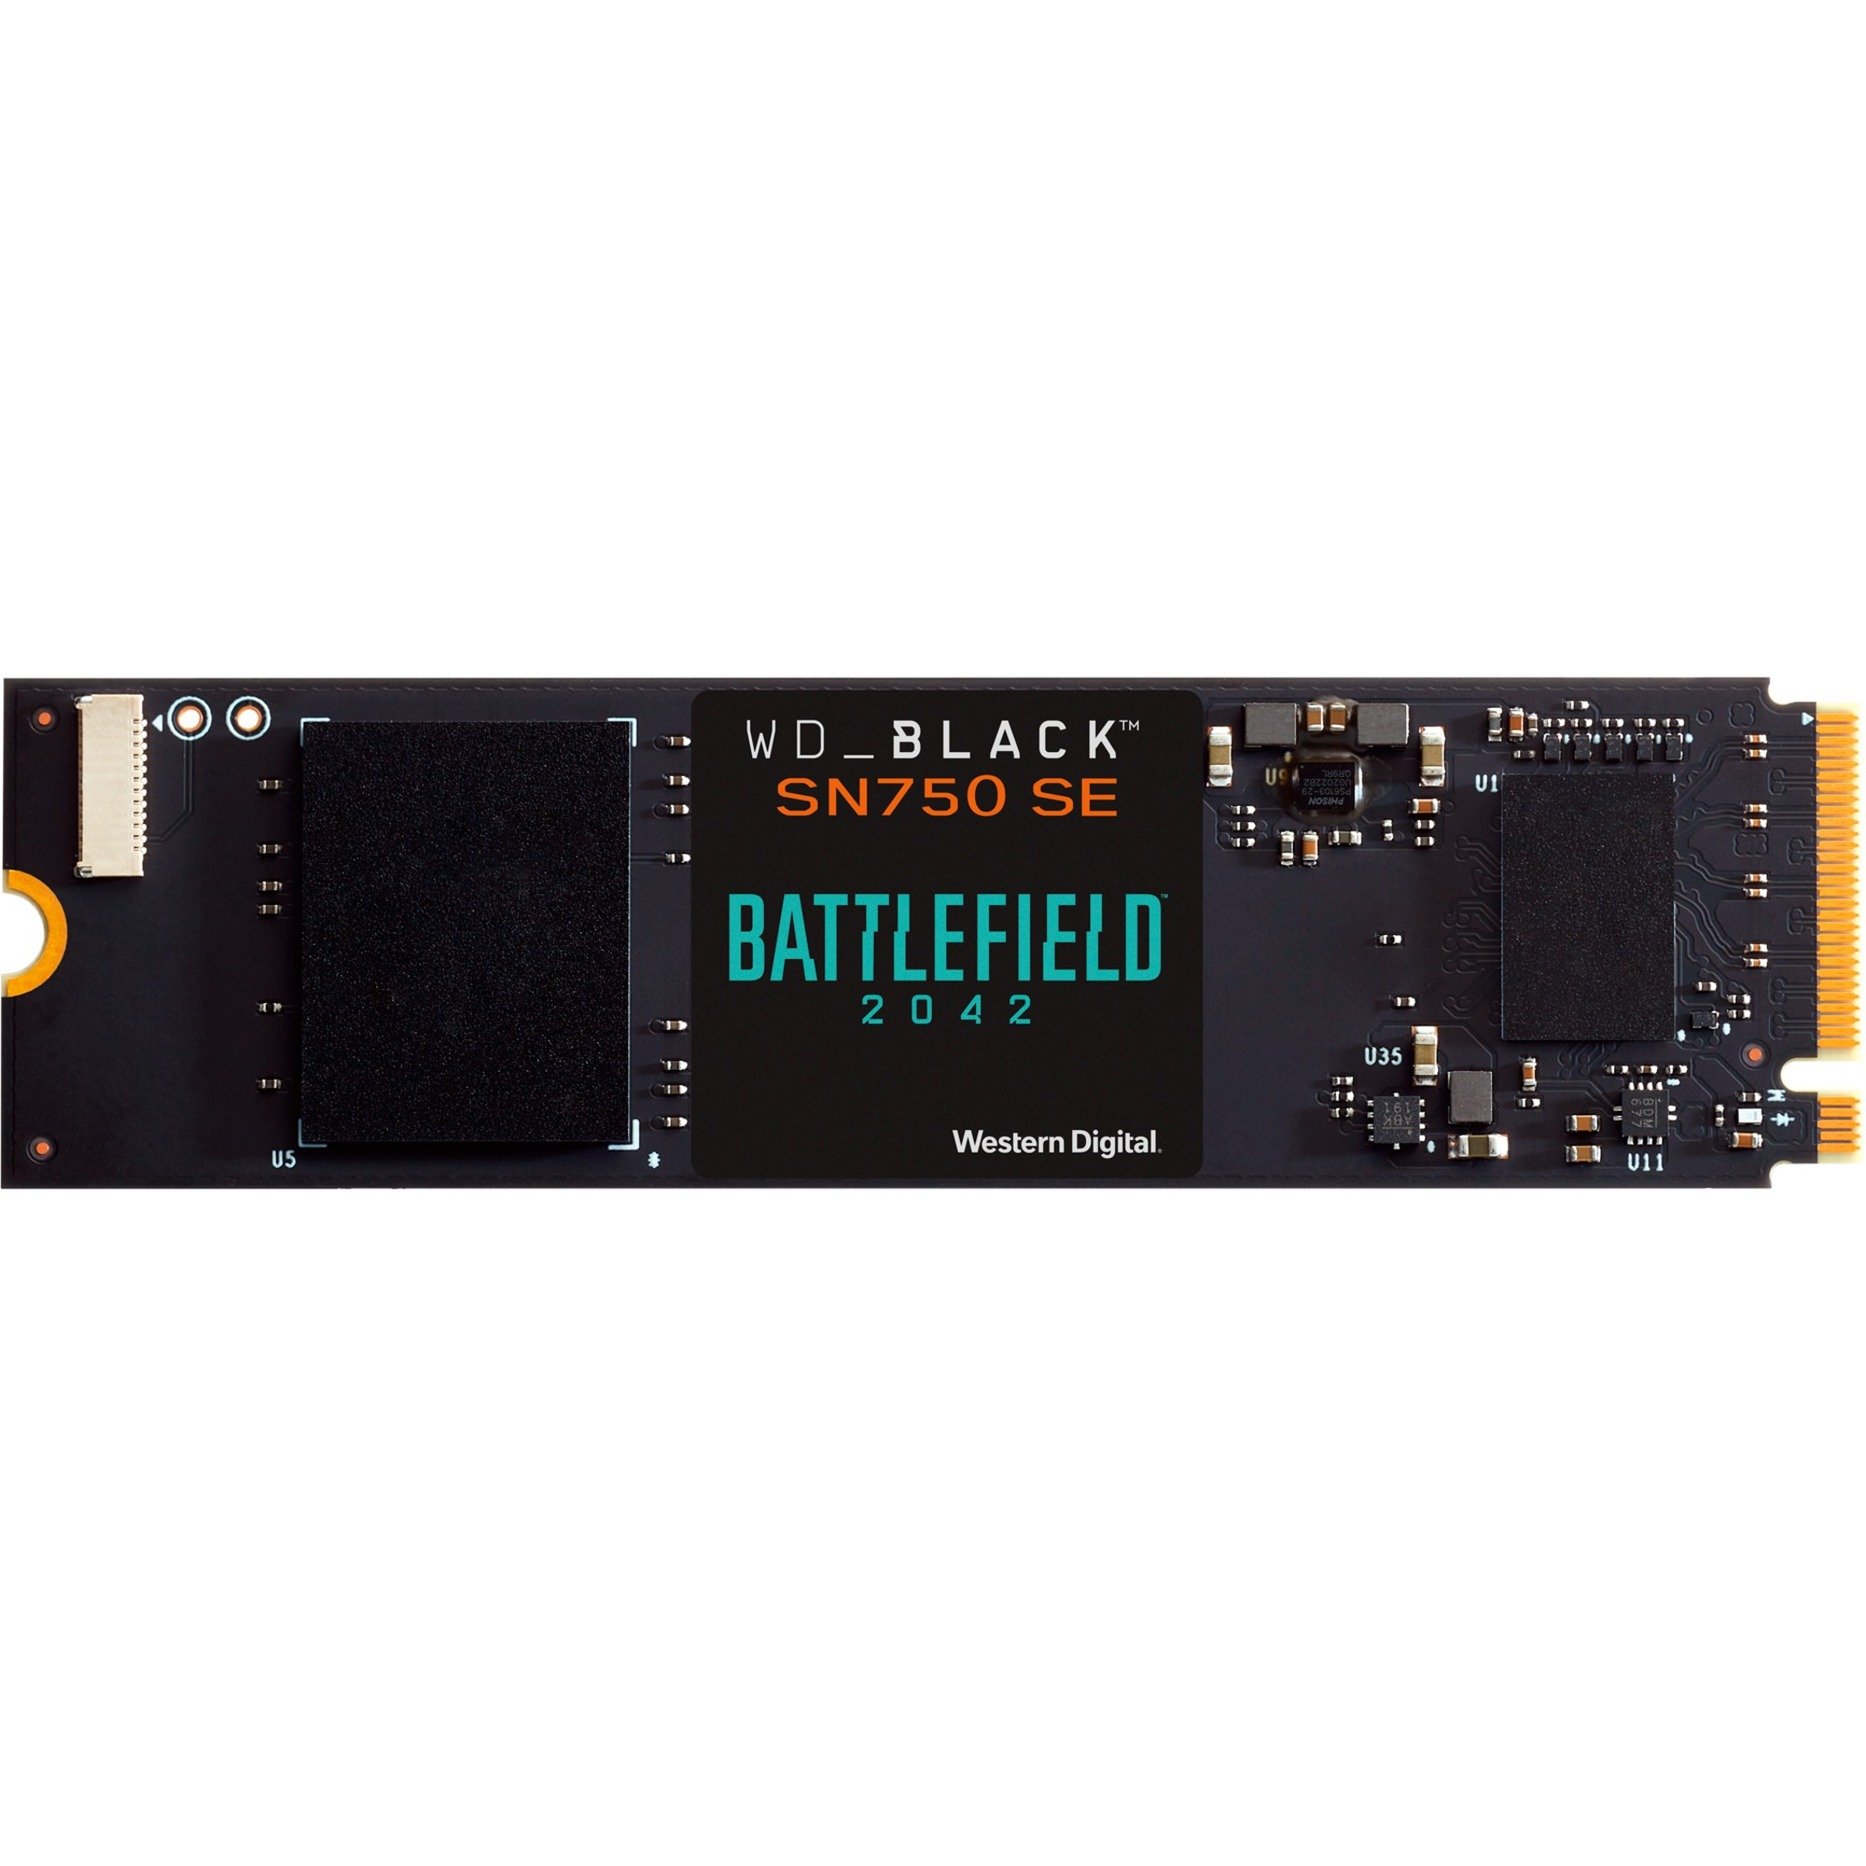 Black SN750 SE 500 GB - Battlefield 2042 PC Game Code Bundle, SSD von WD